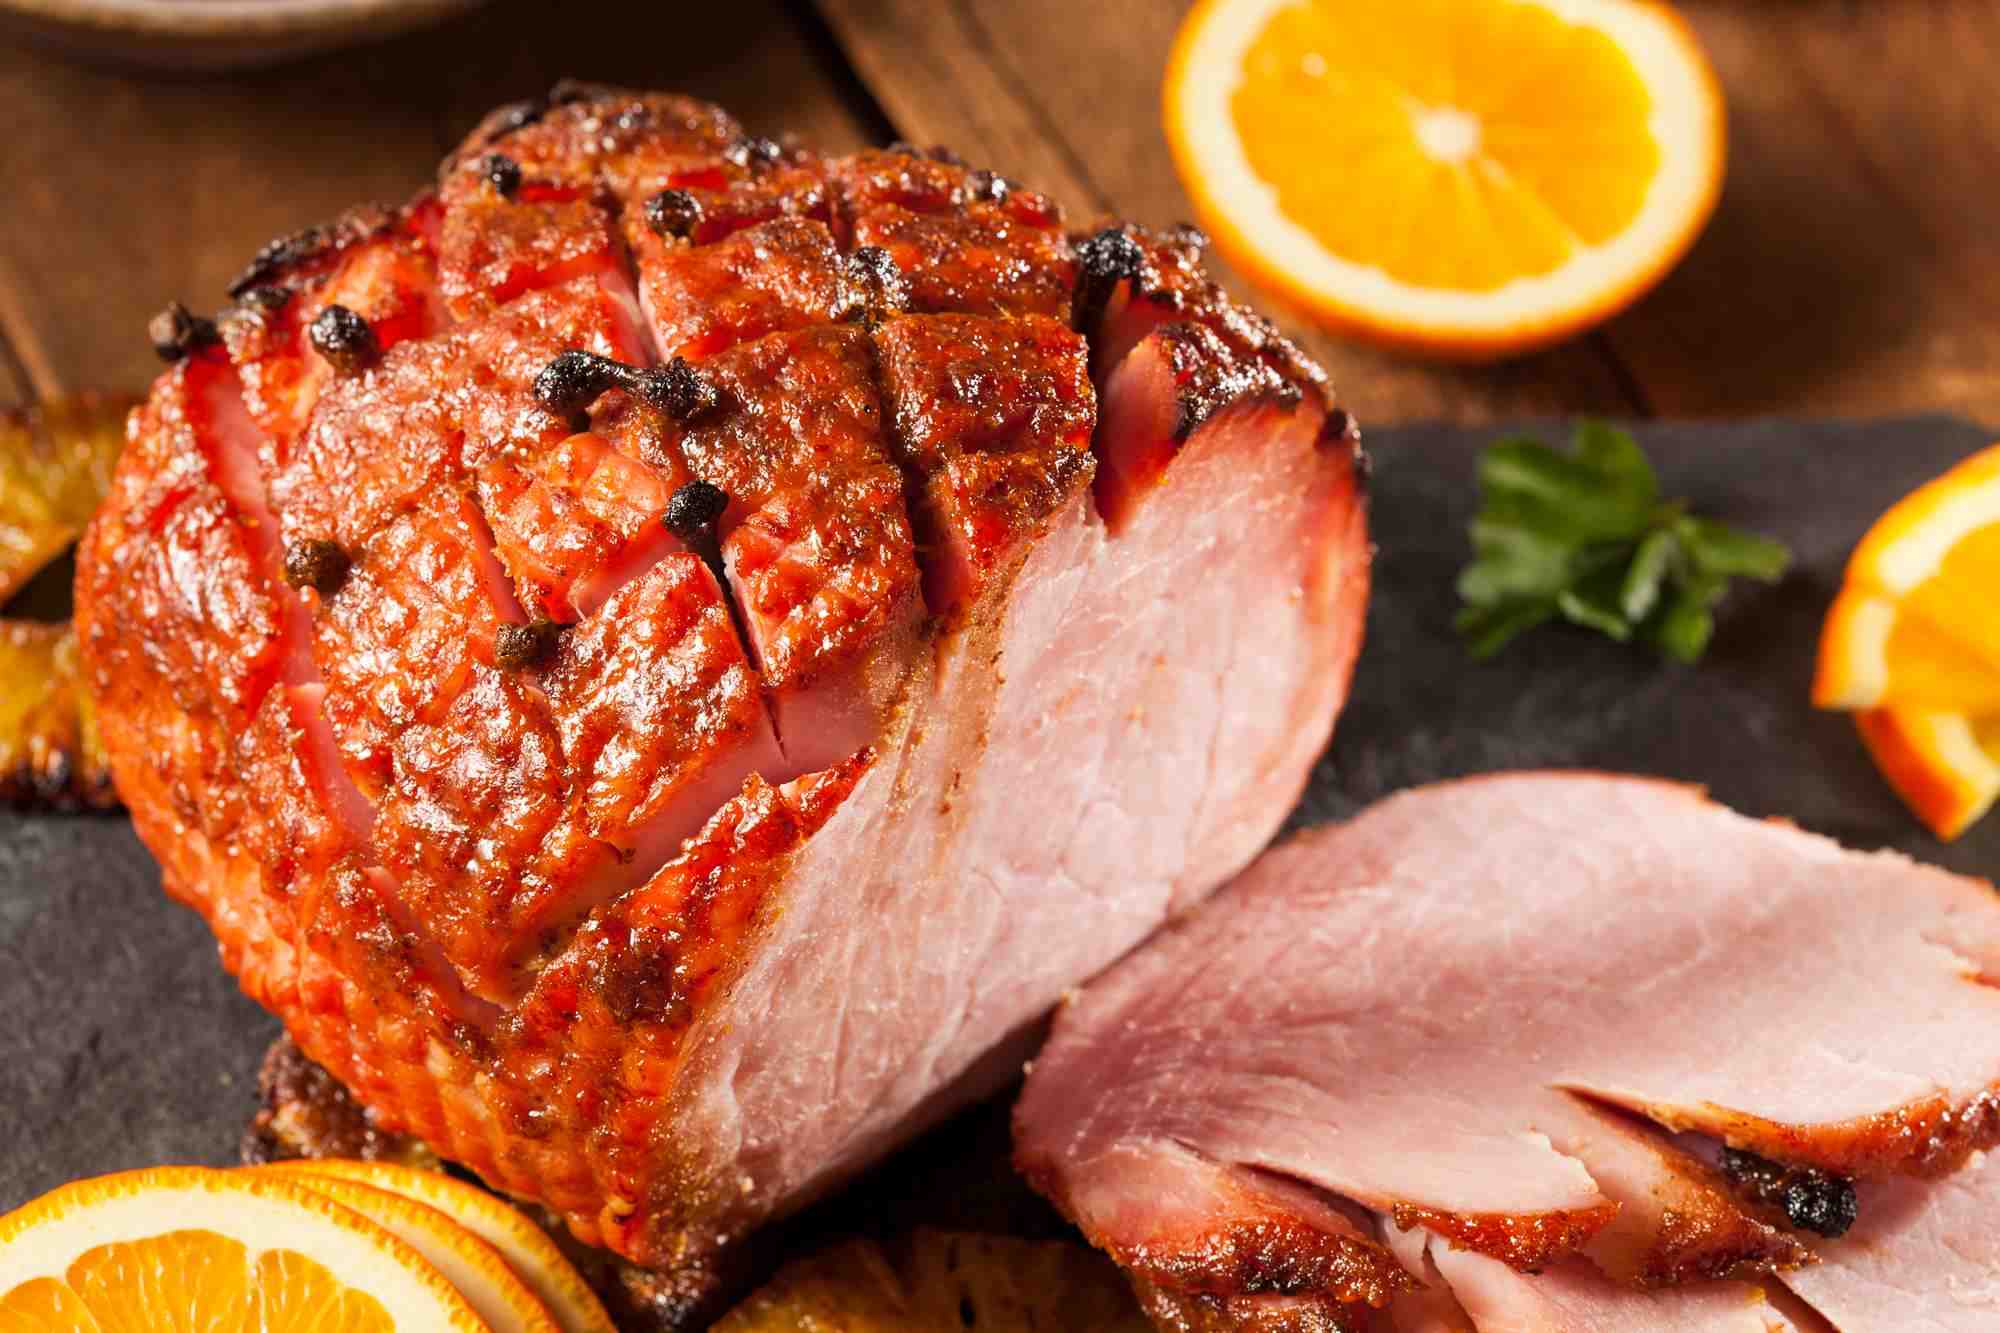 Is ham pork or chicken?